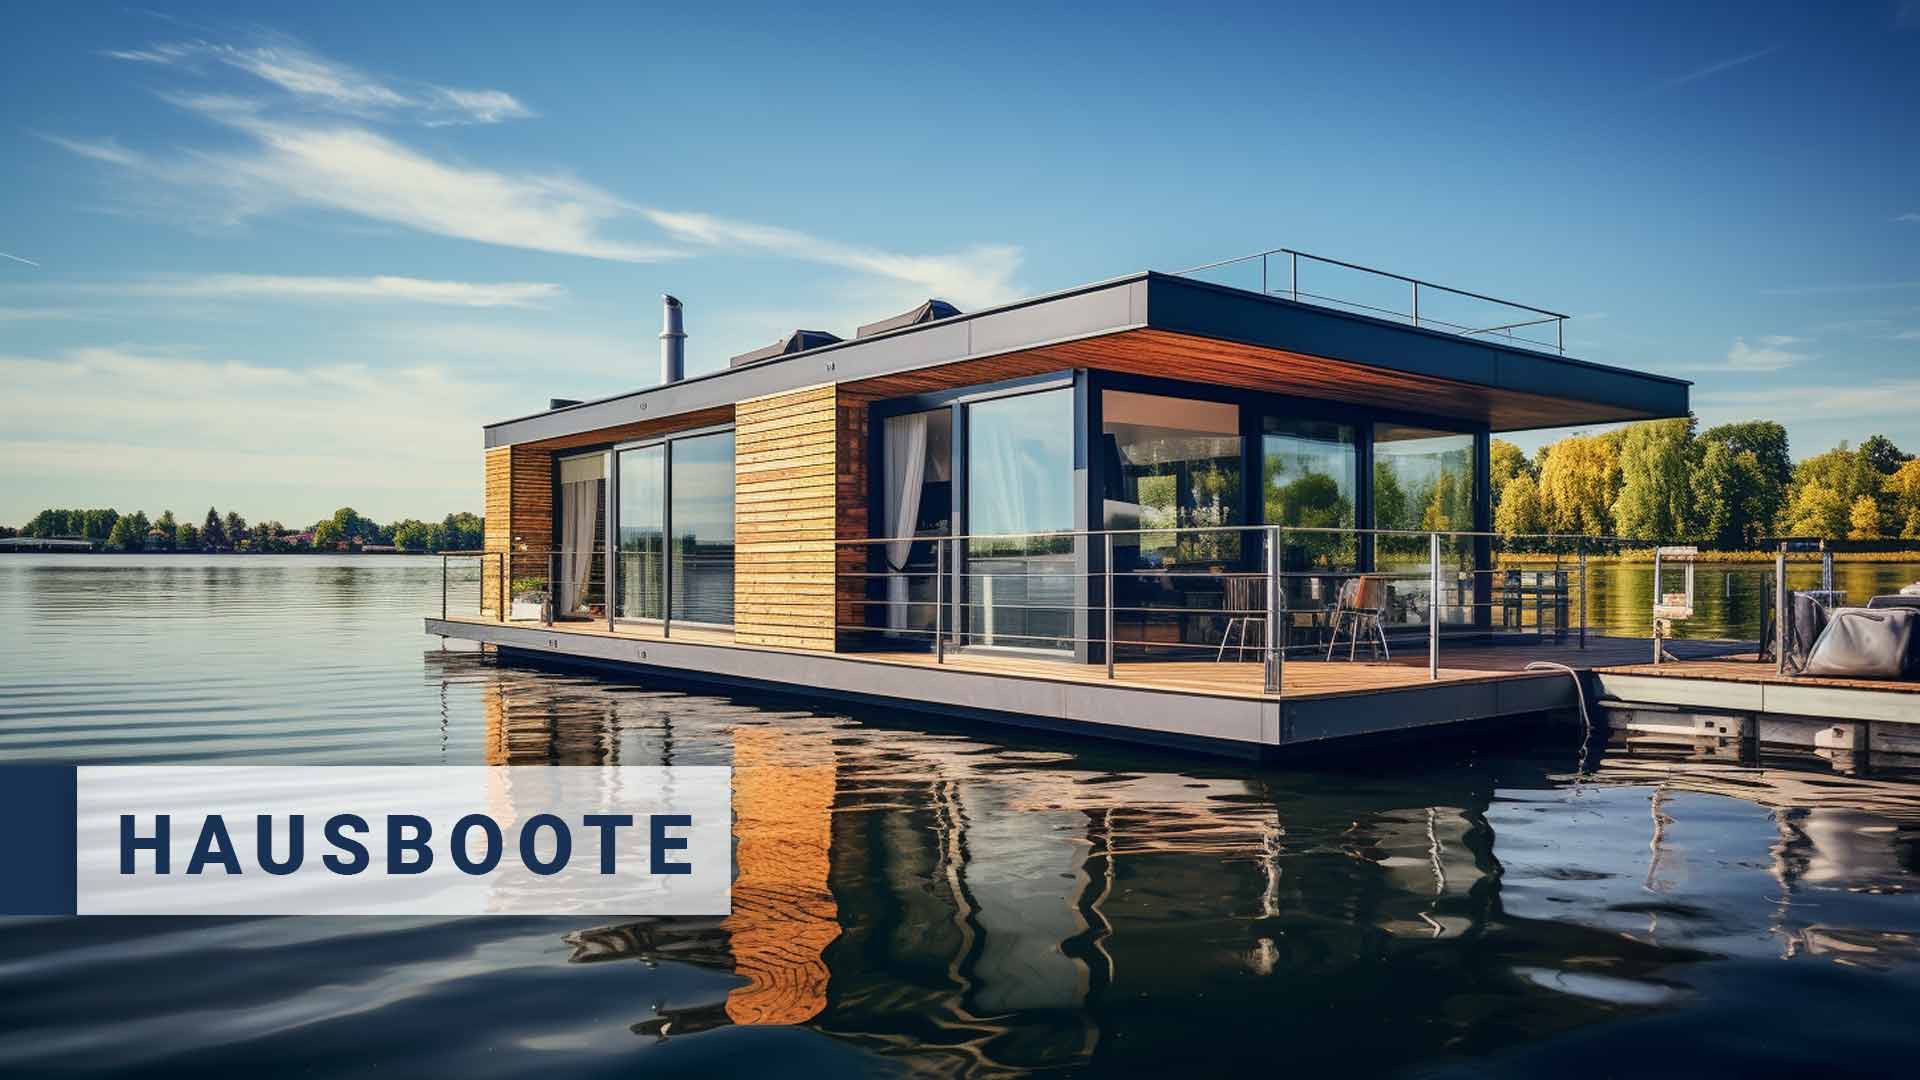 Zu sehen ist ein modernes Hausboot auf einem See in MV, Hausbootbau, Pontons